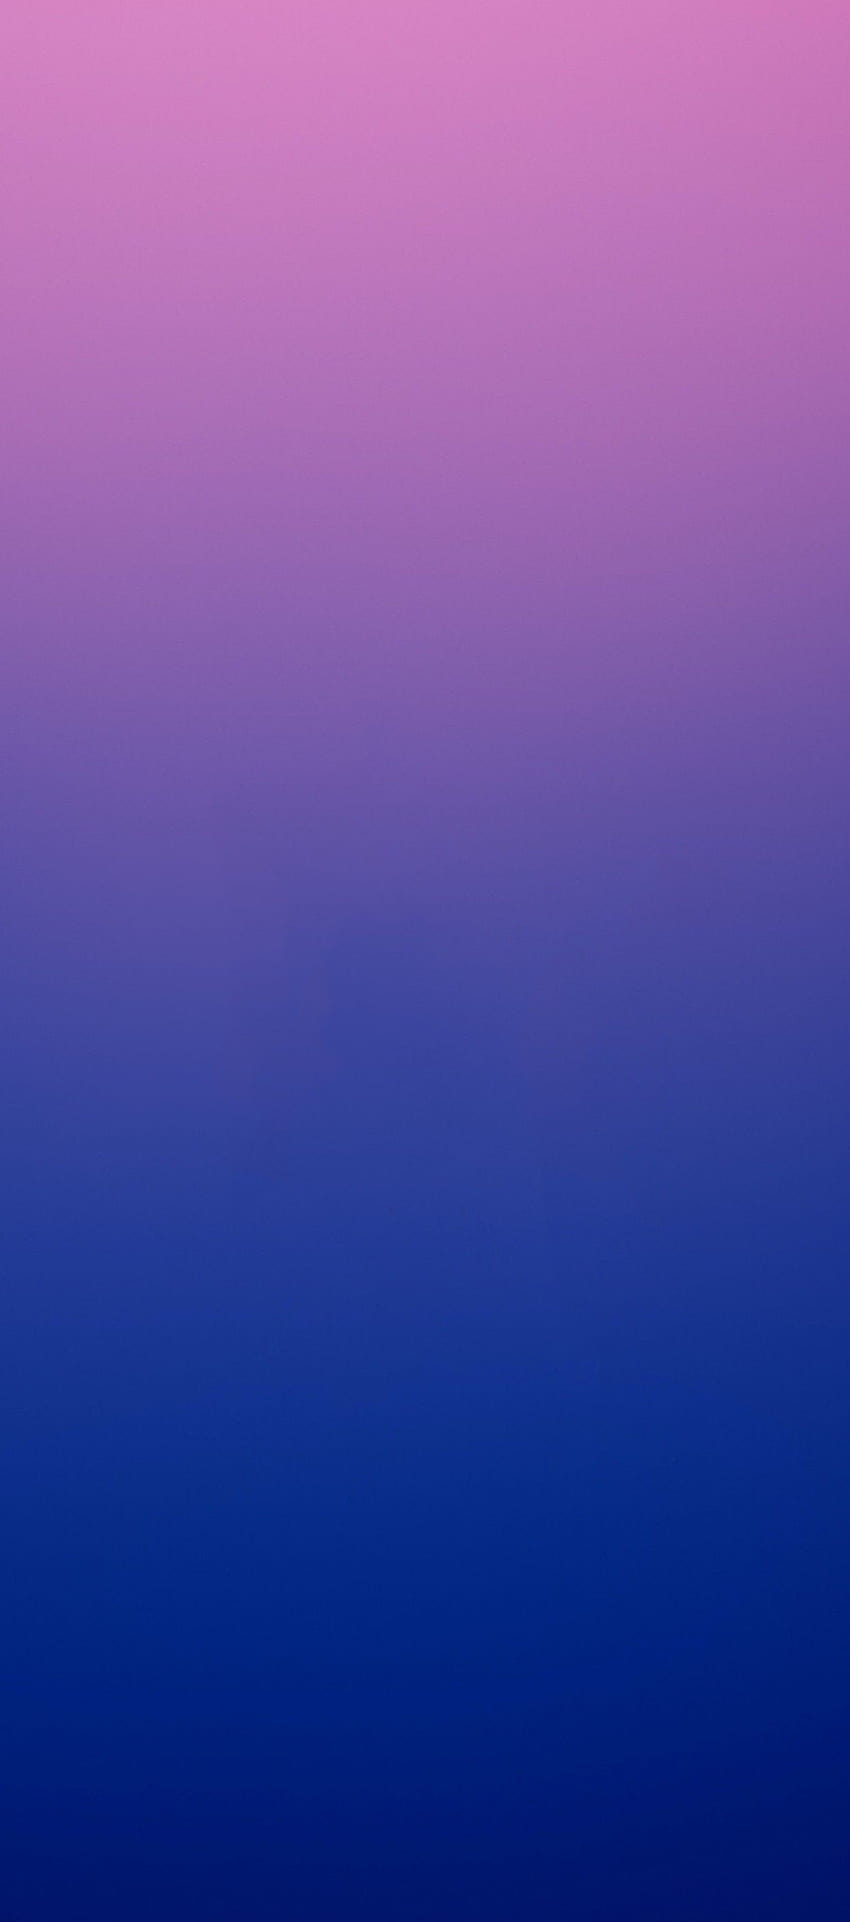 1242x2809, Ios 11, Iphone X, Púrpura, Rosa, Azul, Limpio fondo de pantalla del teléfono